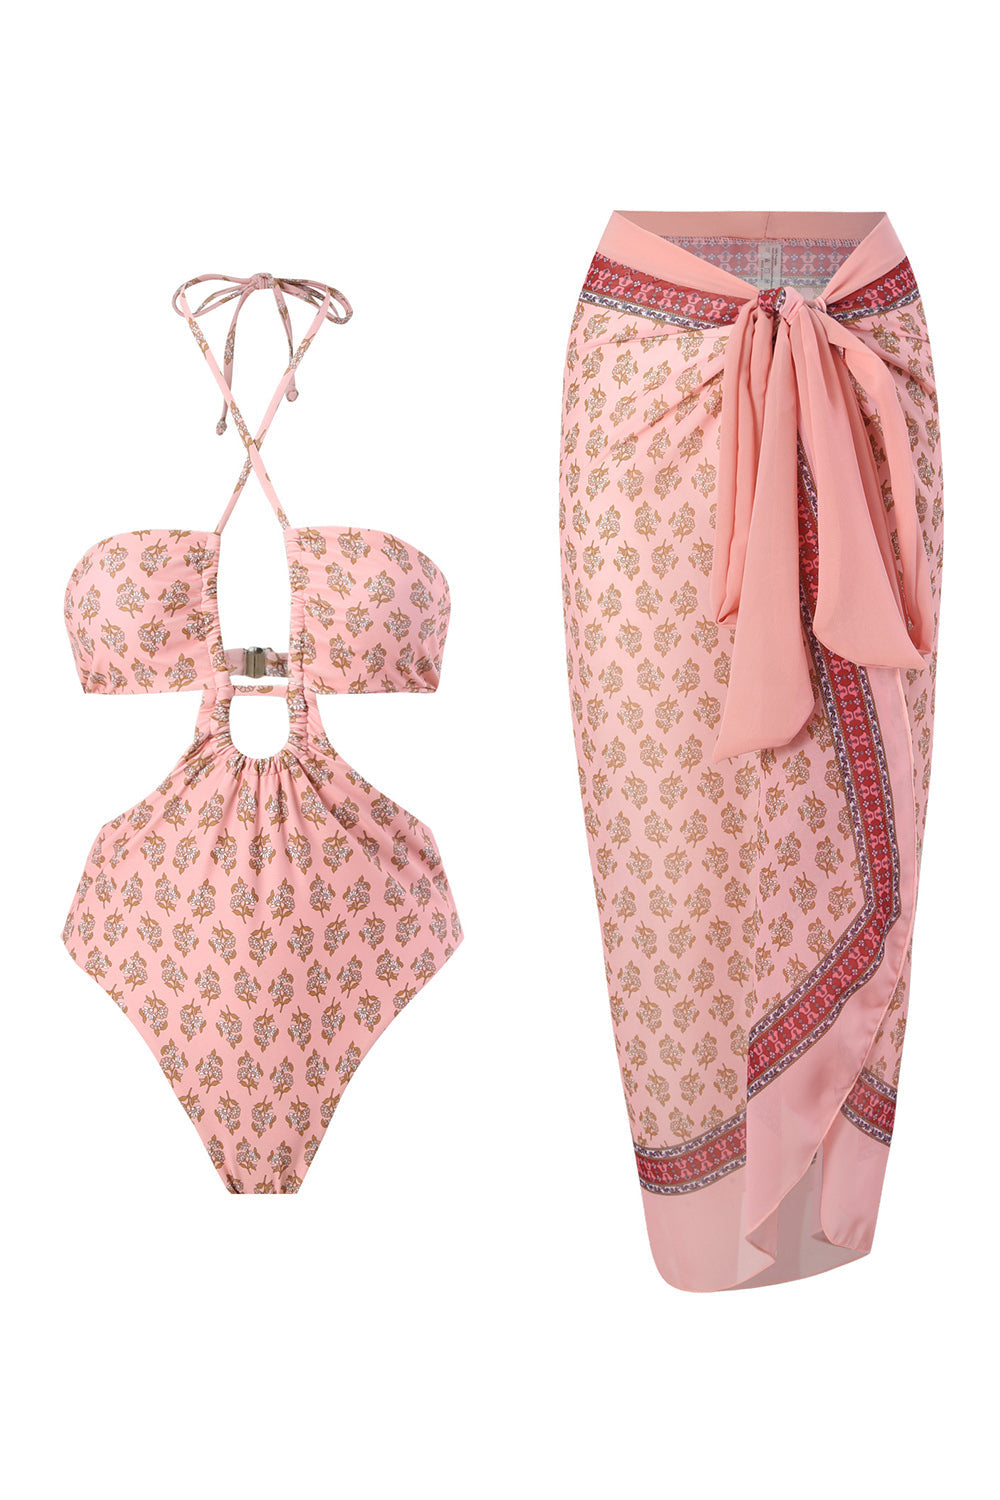 Halter Neck One Piece Pink Swimwear with Beach Skirt